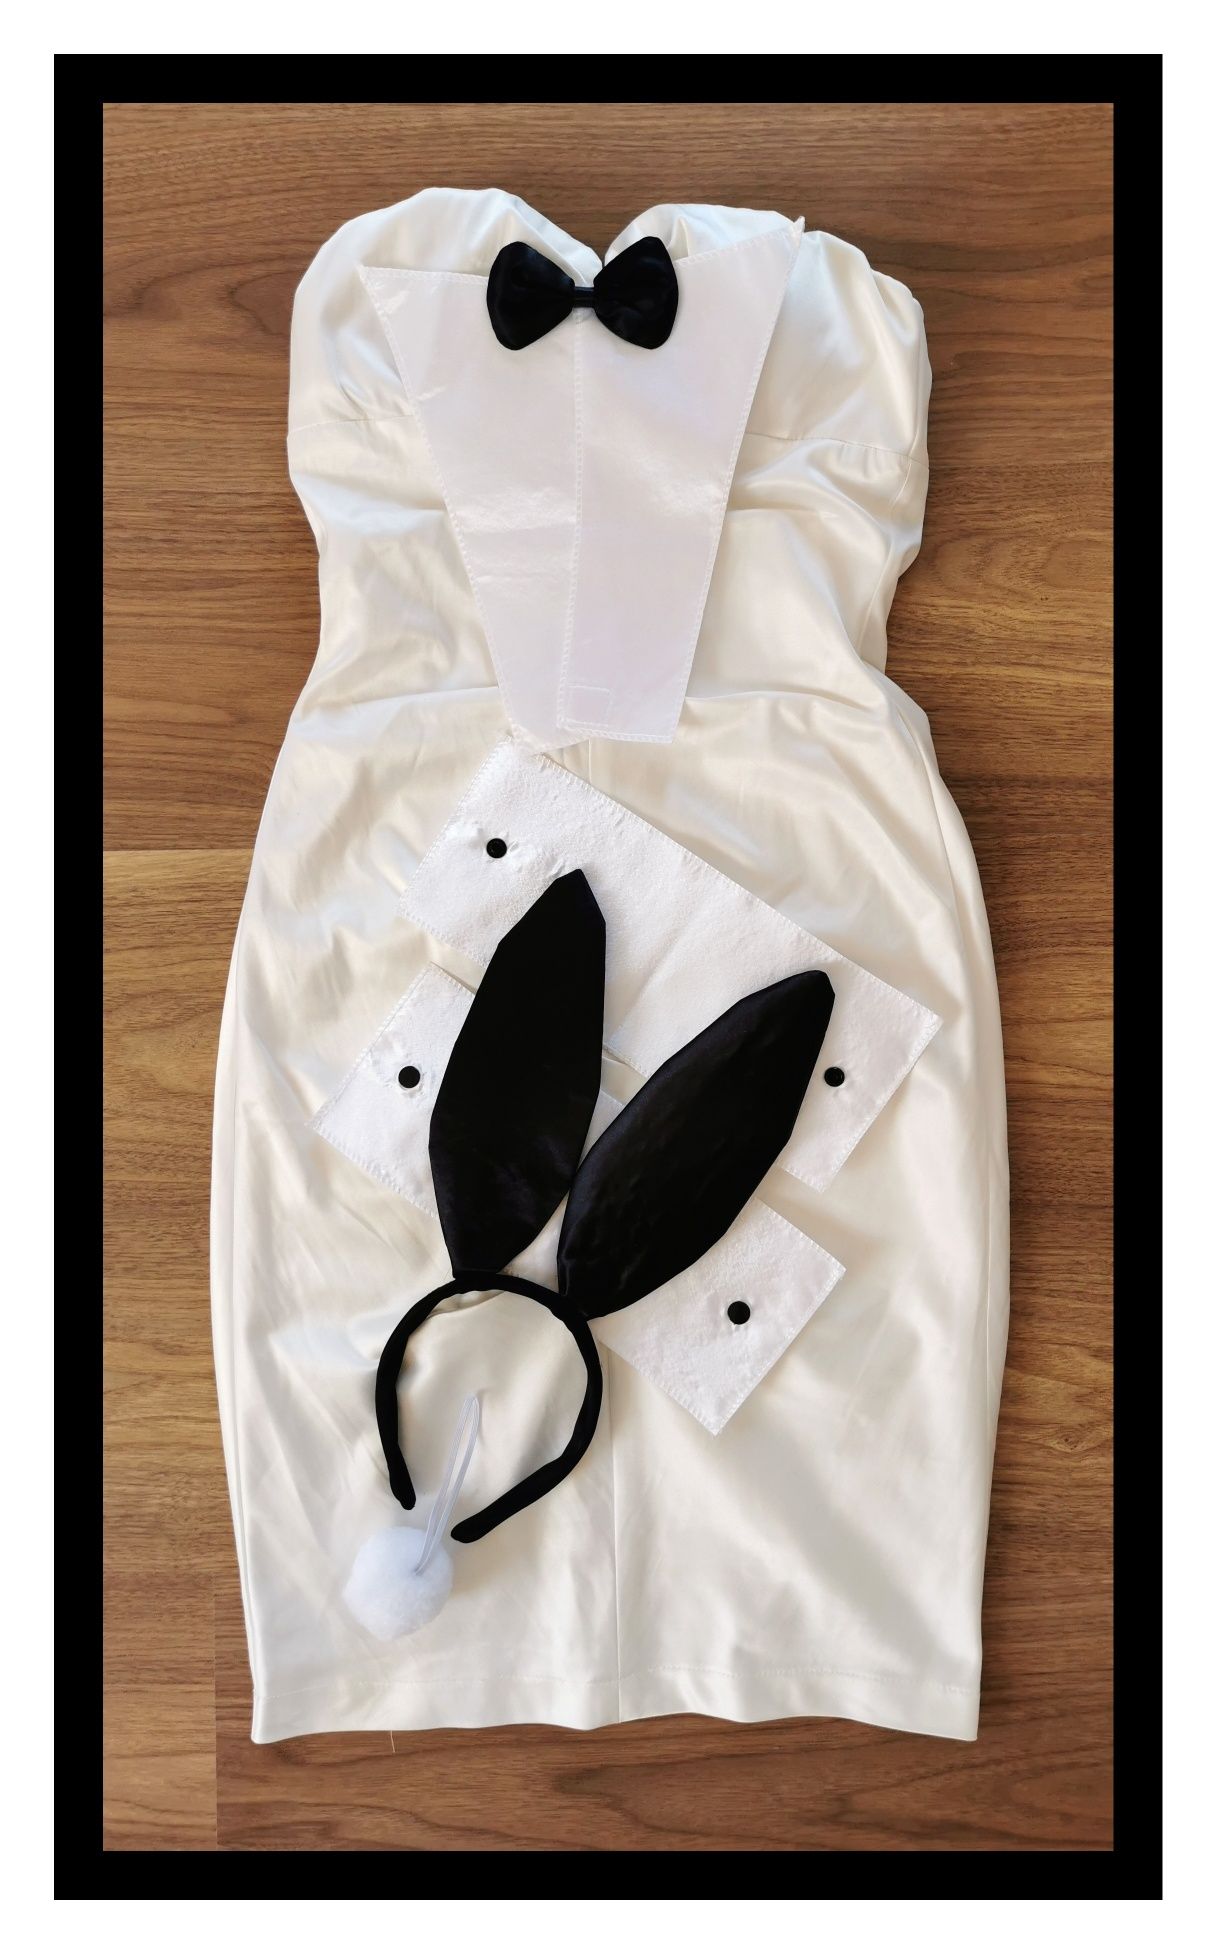 Kostium/przebranie sexy króliczka (S/36) #elegant #playboybunny